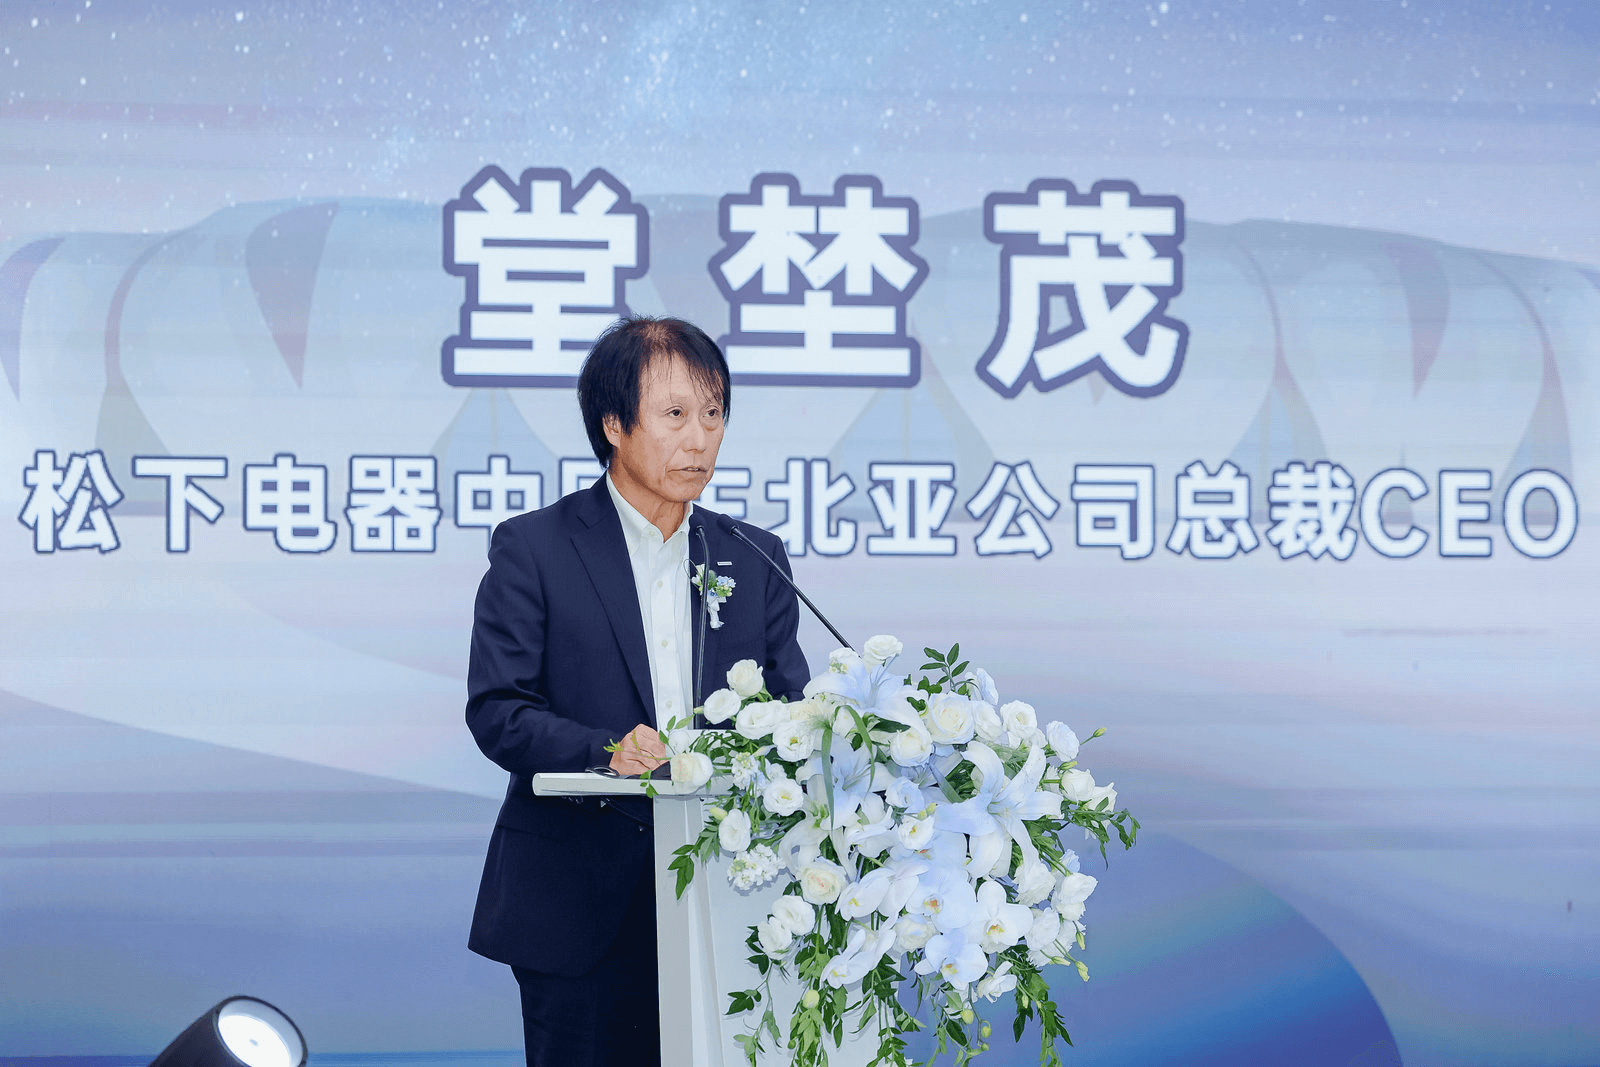 7880件生活家电即日起航 松下电器赞助杭州亚运会产品交付仪式举行